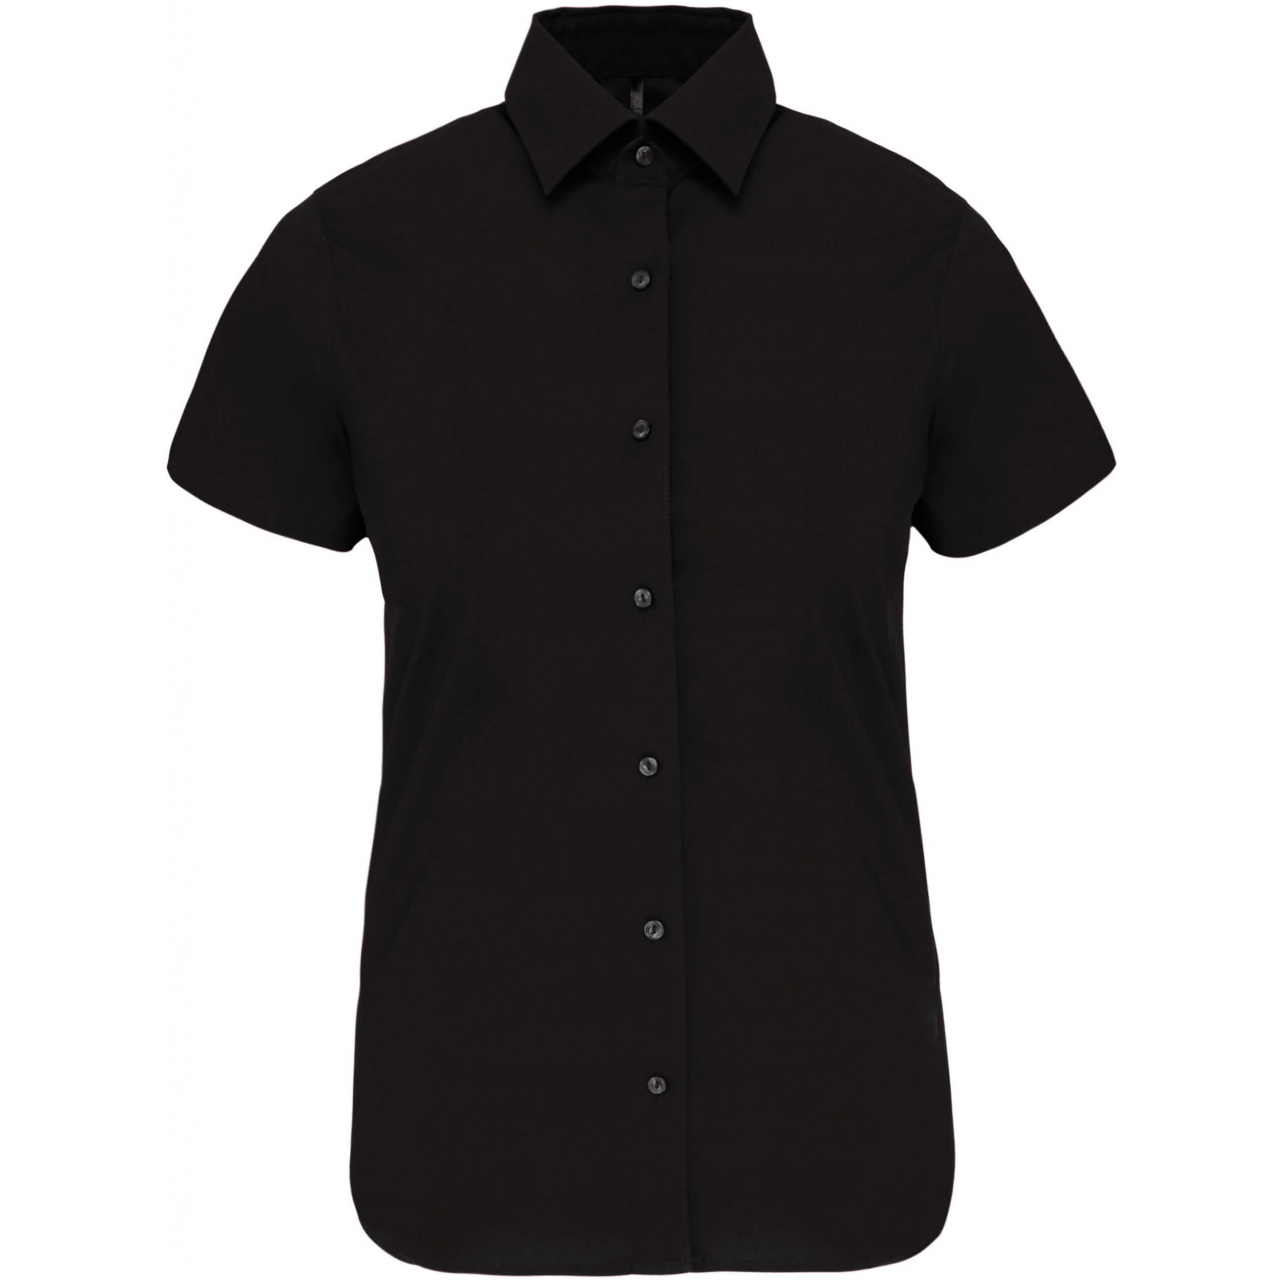 Košile dámská s krátkým rukávem Kariban strečová - černá, XXL